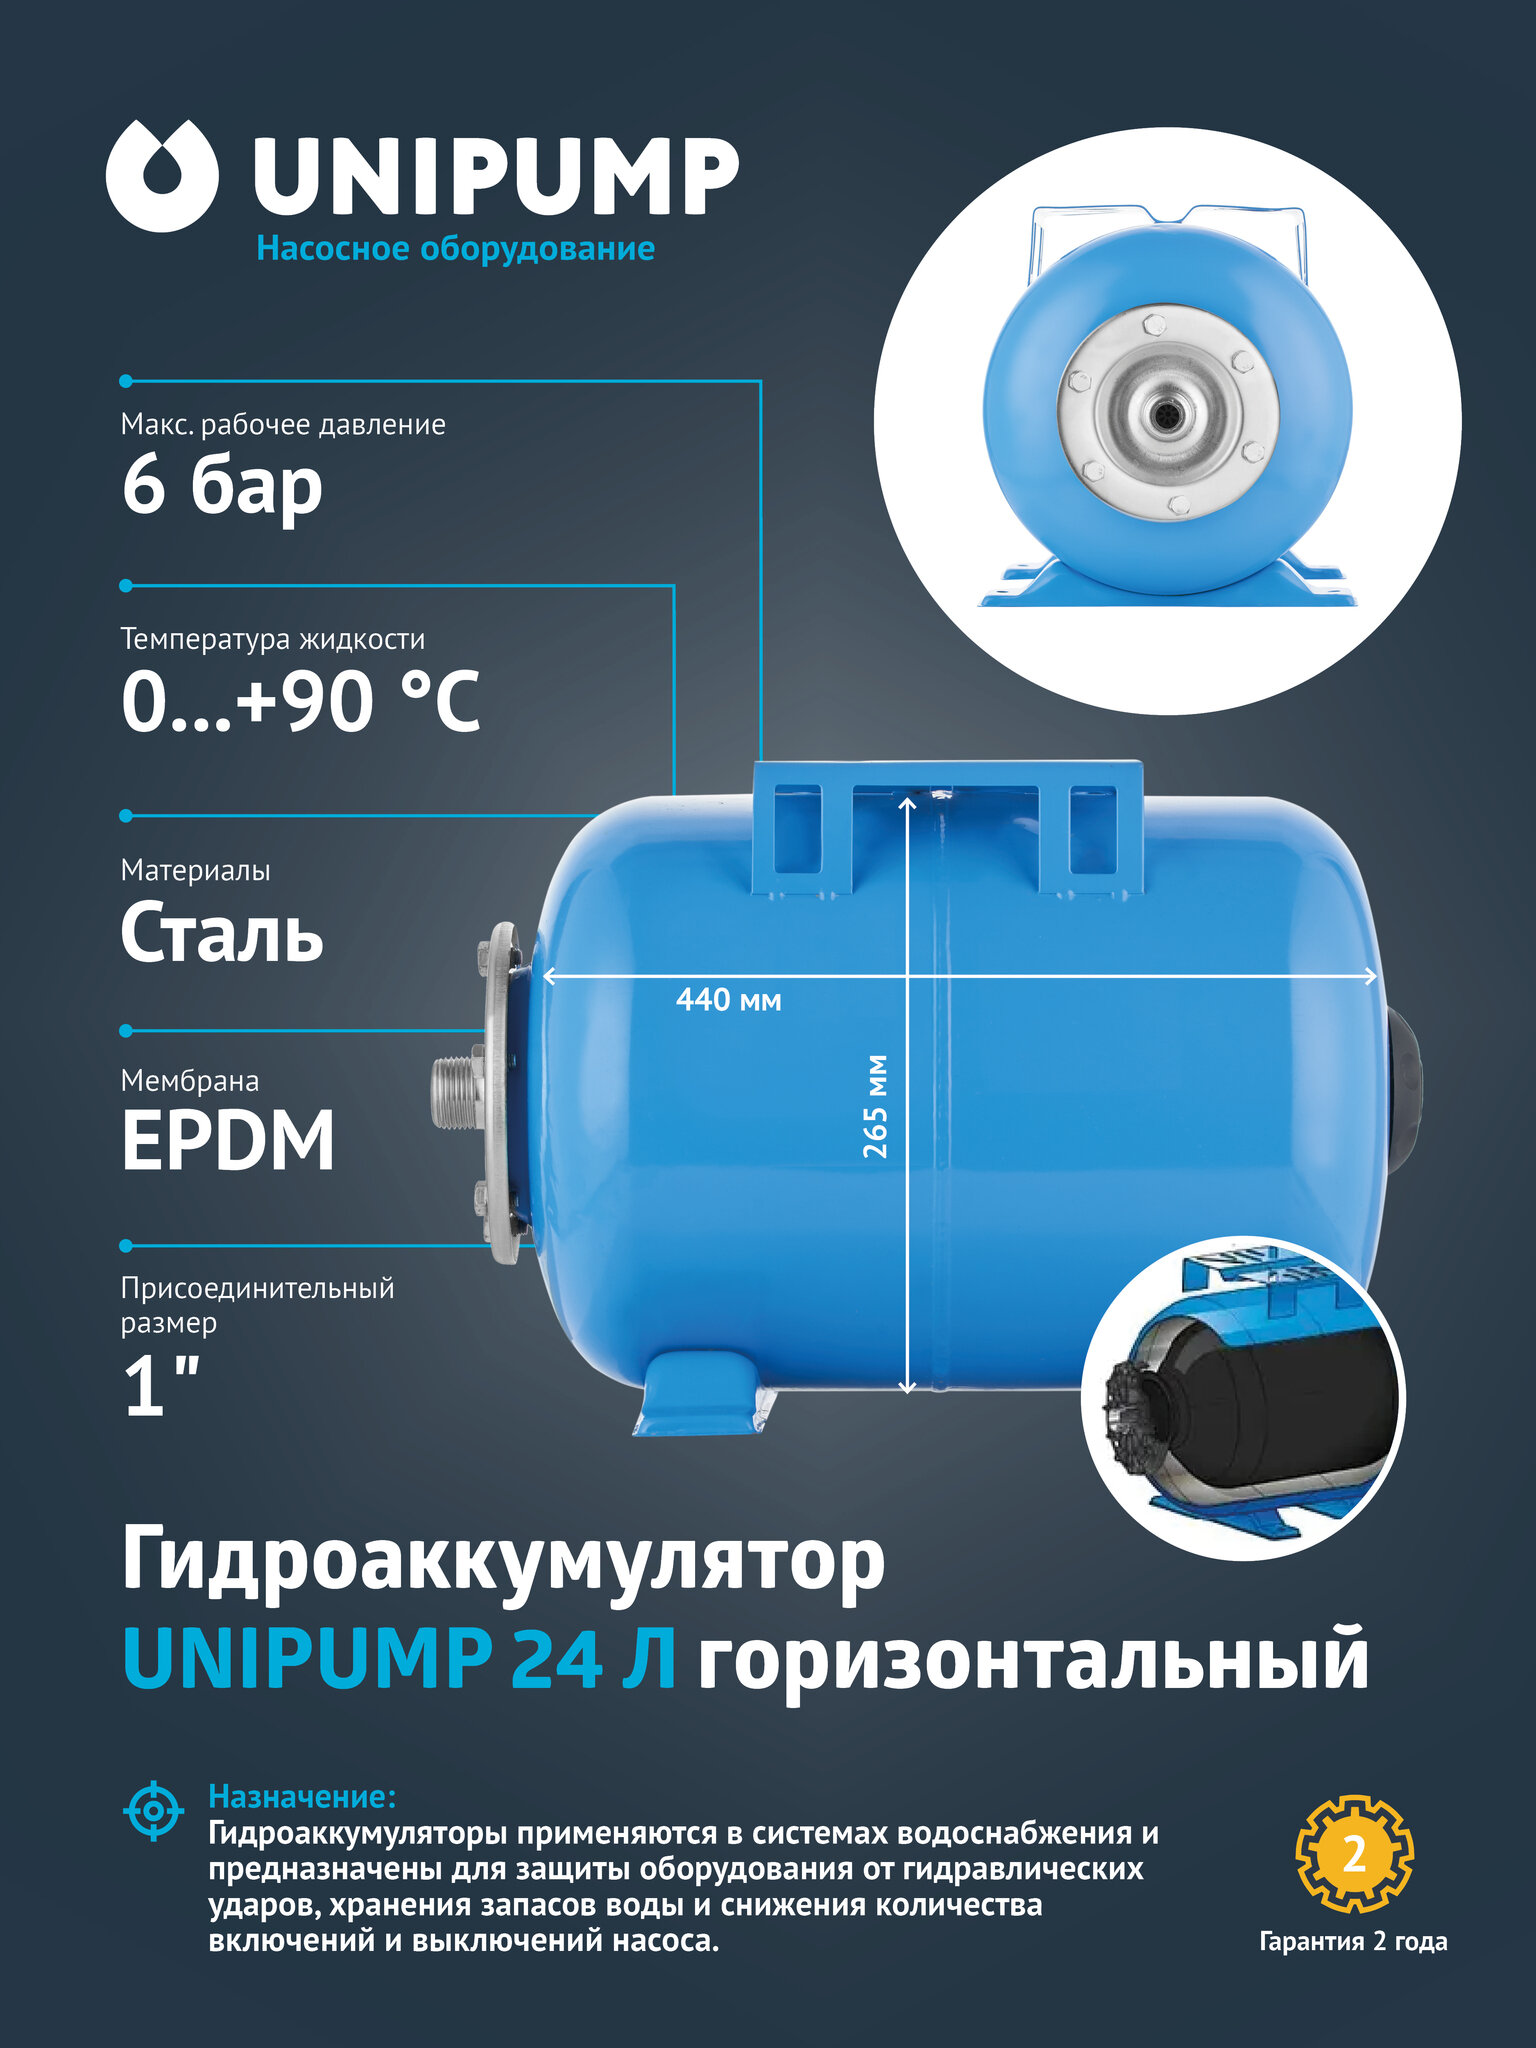 Горизонтальный гидроаккумулятор UNIPUMP - фото №2